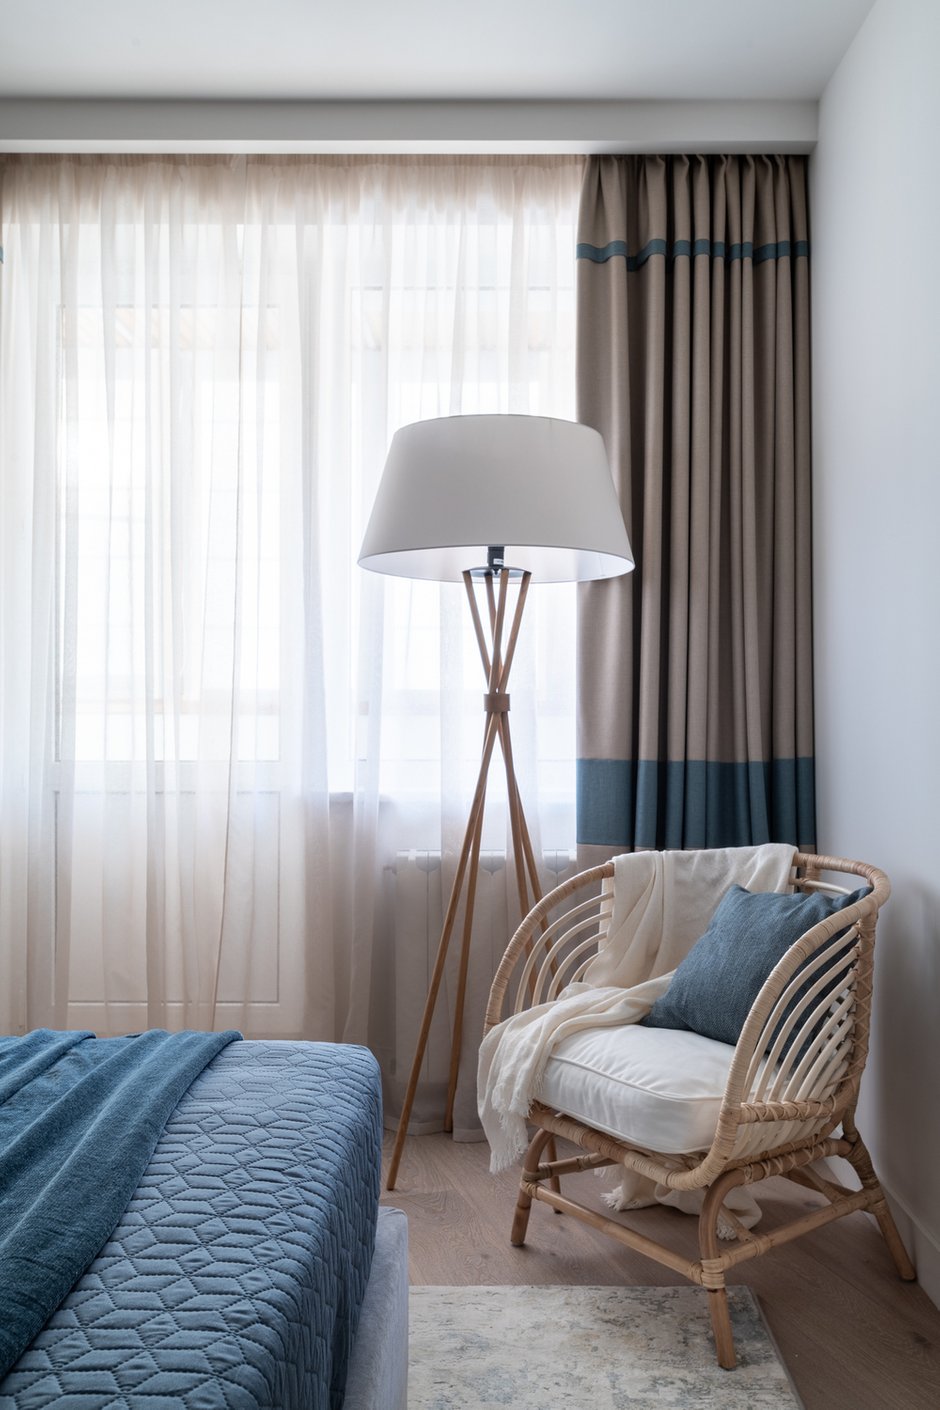 Средиземноморские нотки в спальне поддержали голубыми полосами на шторах и текстилем на кровати. Плетеное кресло из ротанга также отсылает к побережью.